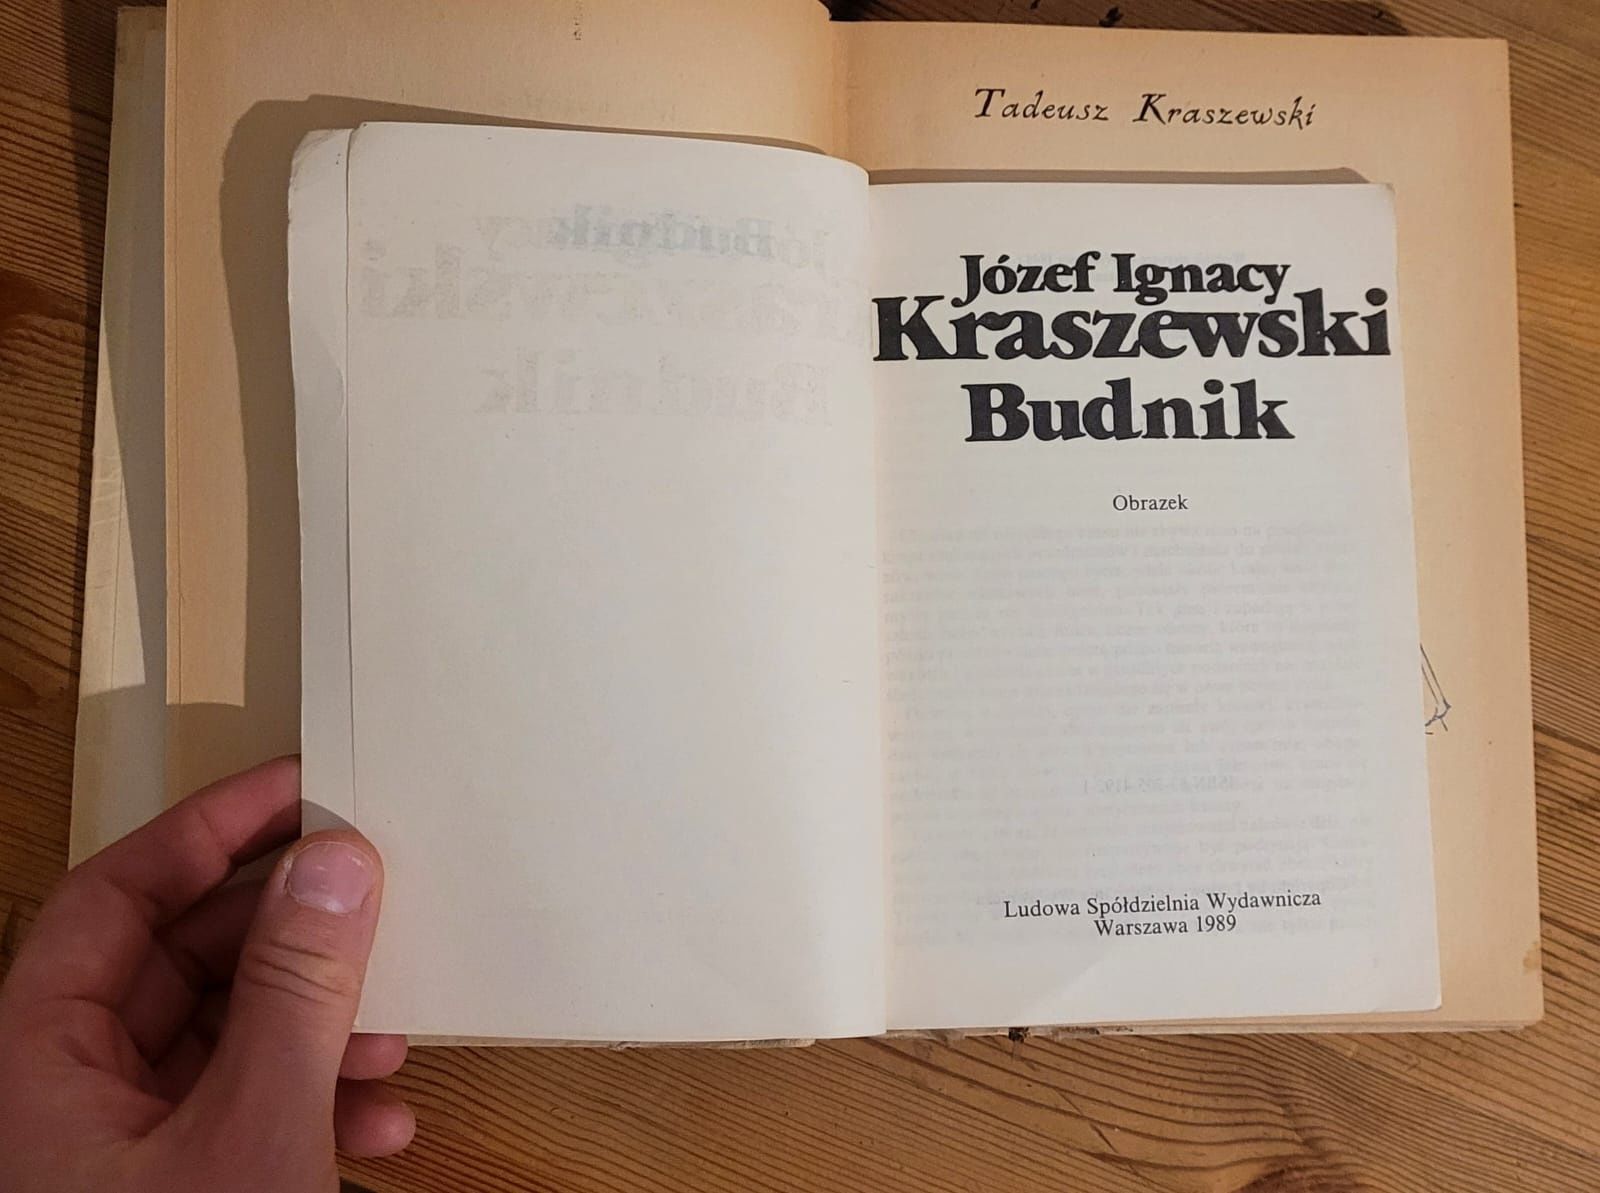 3 książki J.I. Kraszewski, T. Kraszewski